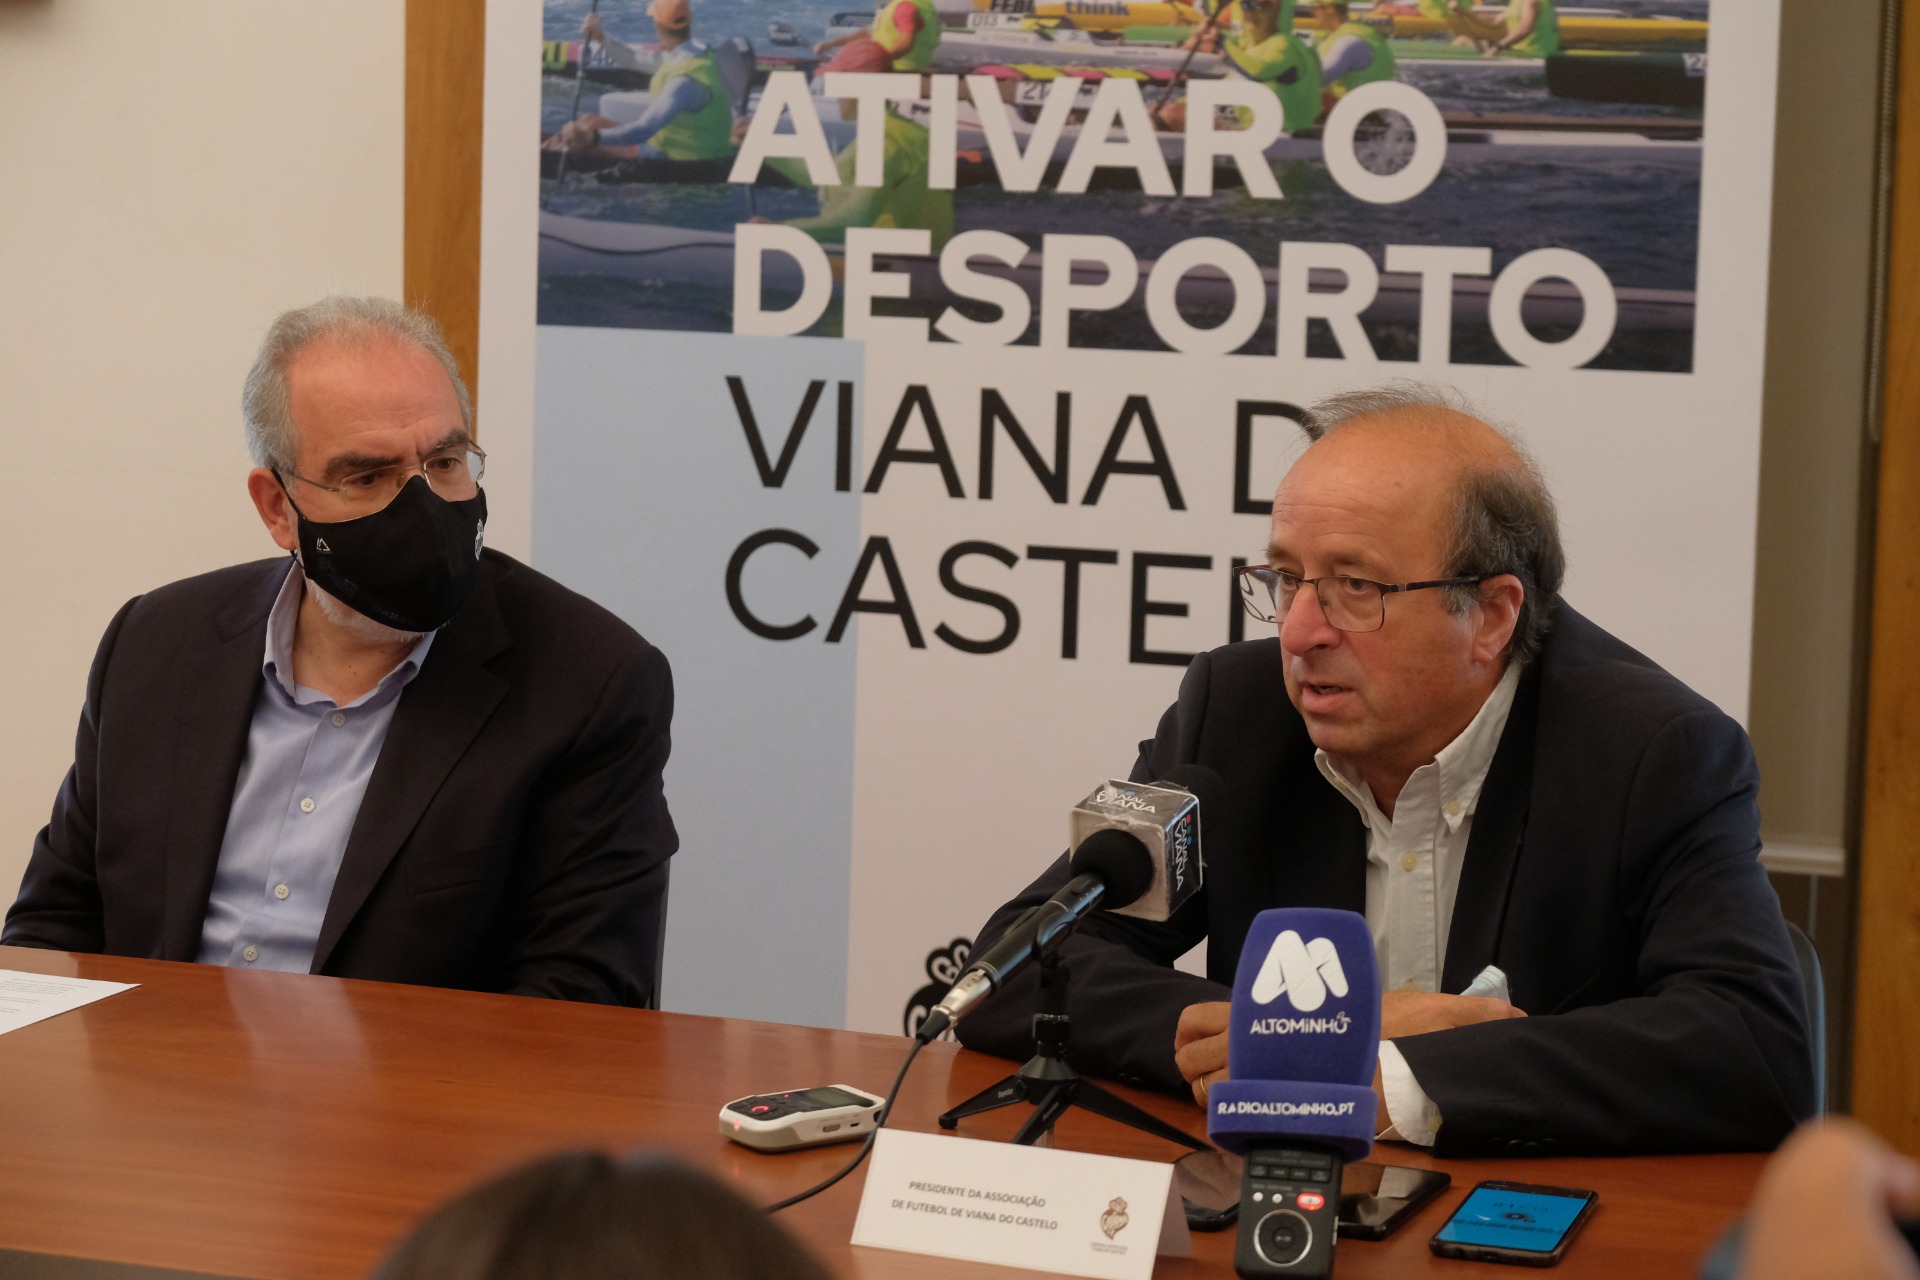 "Ativar o desporto" | Viana do Castelo